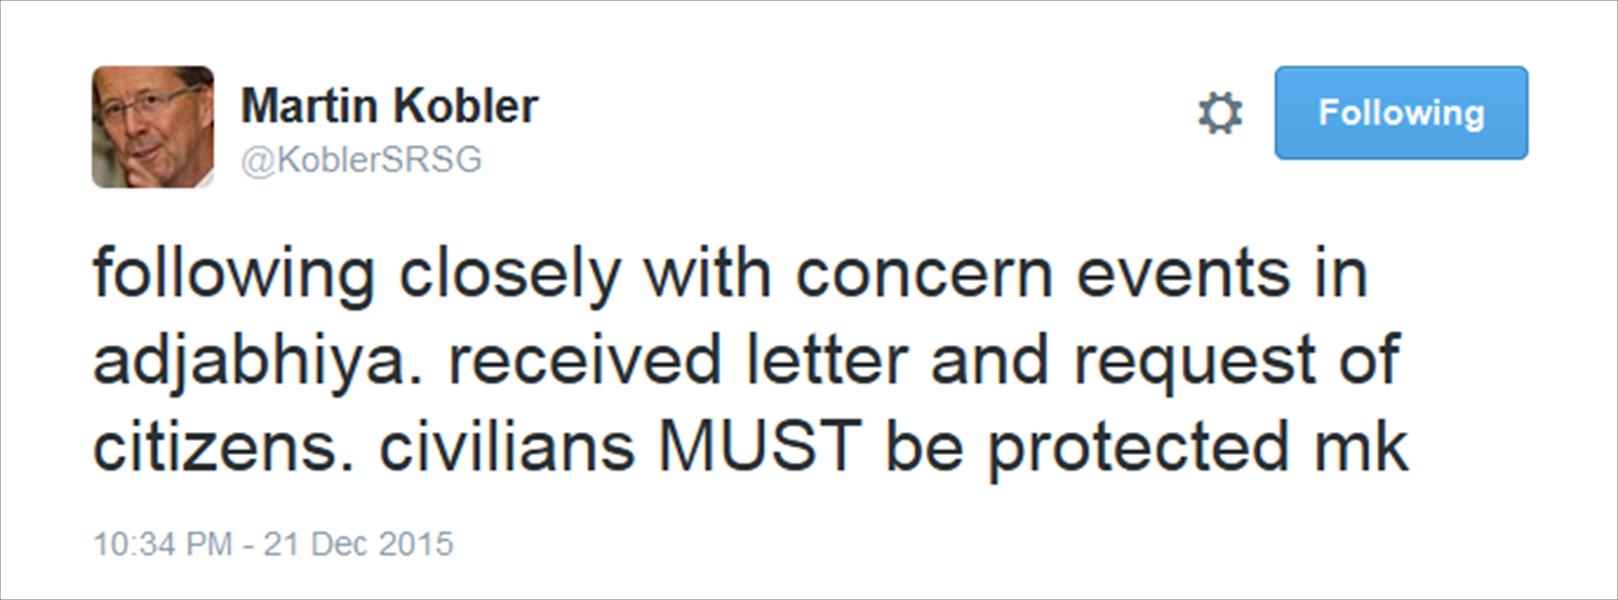 كوبلر يطالب بحماية المدنيين في إجدابيا